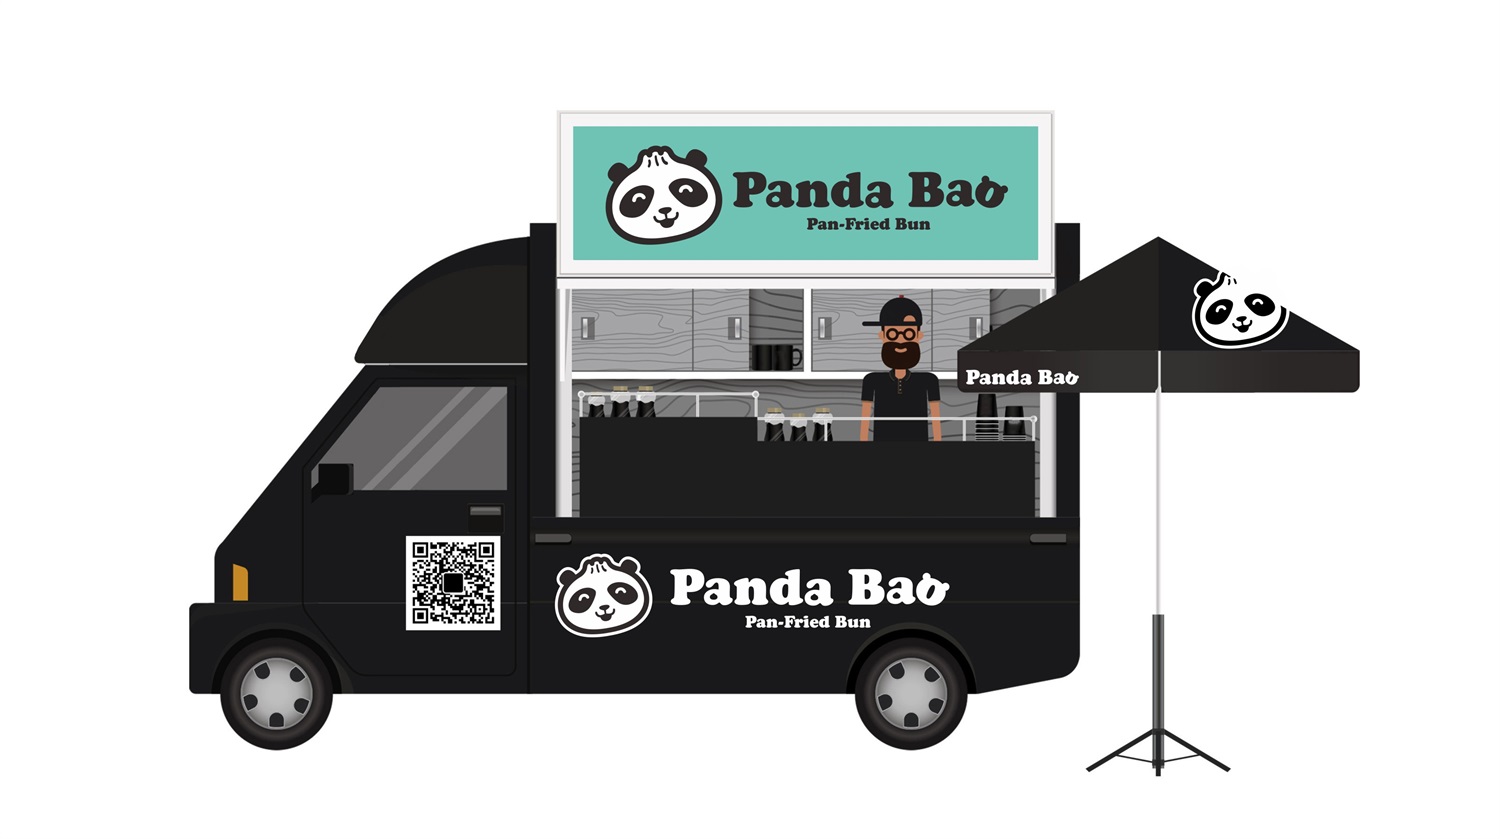 水煎包连锁餐饮品牌Panda Bao餐车外观设计